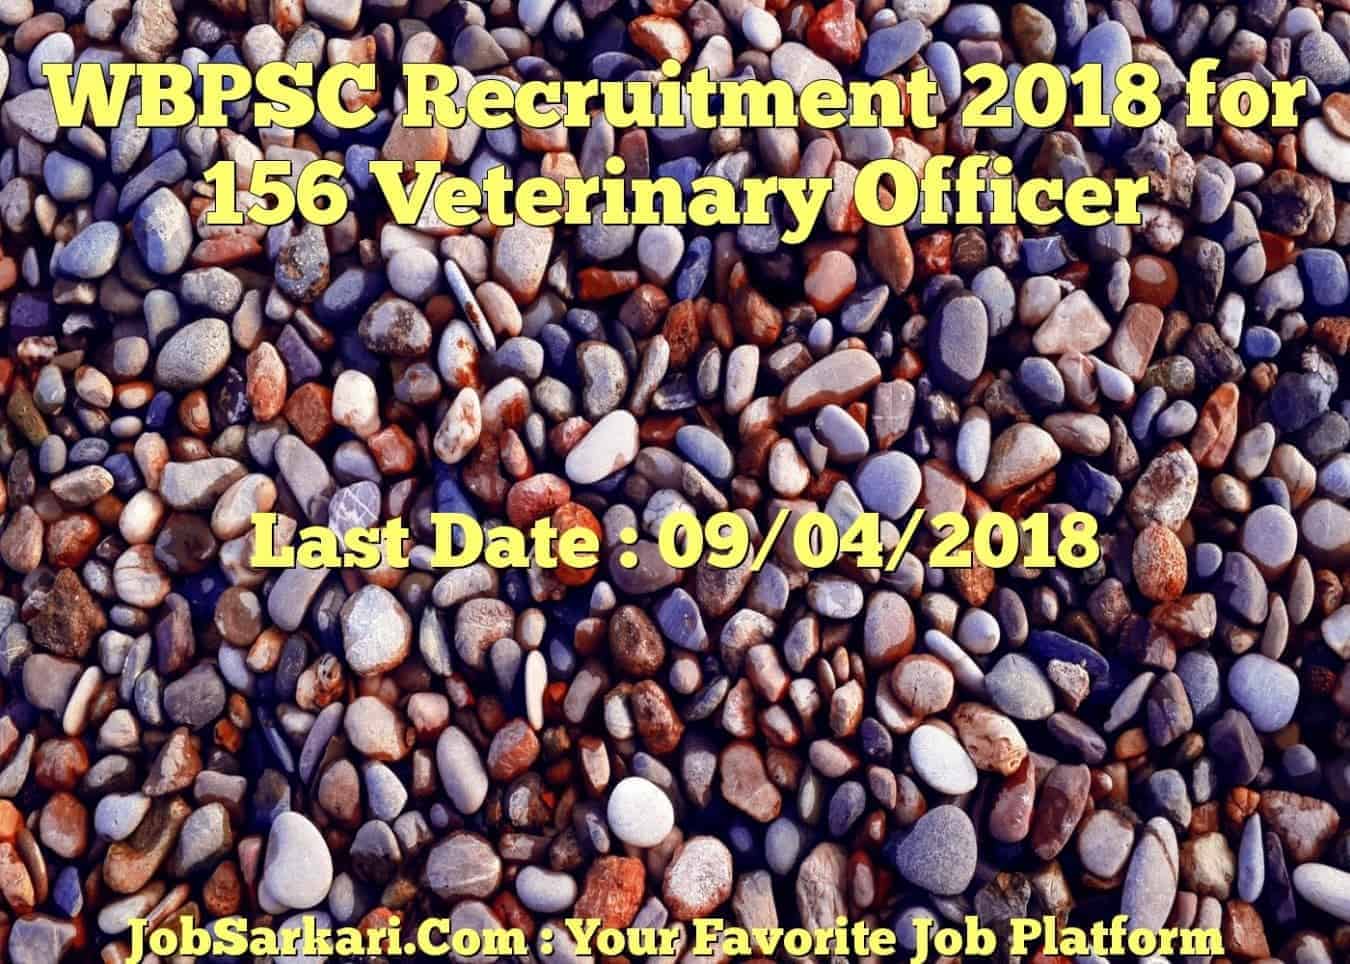 WBPSC Recruitment 2018 for 156 Veterinary Officer